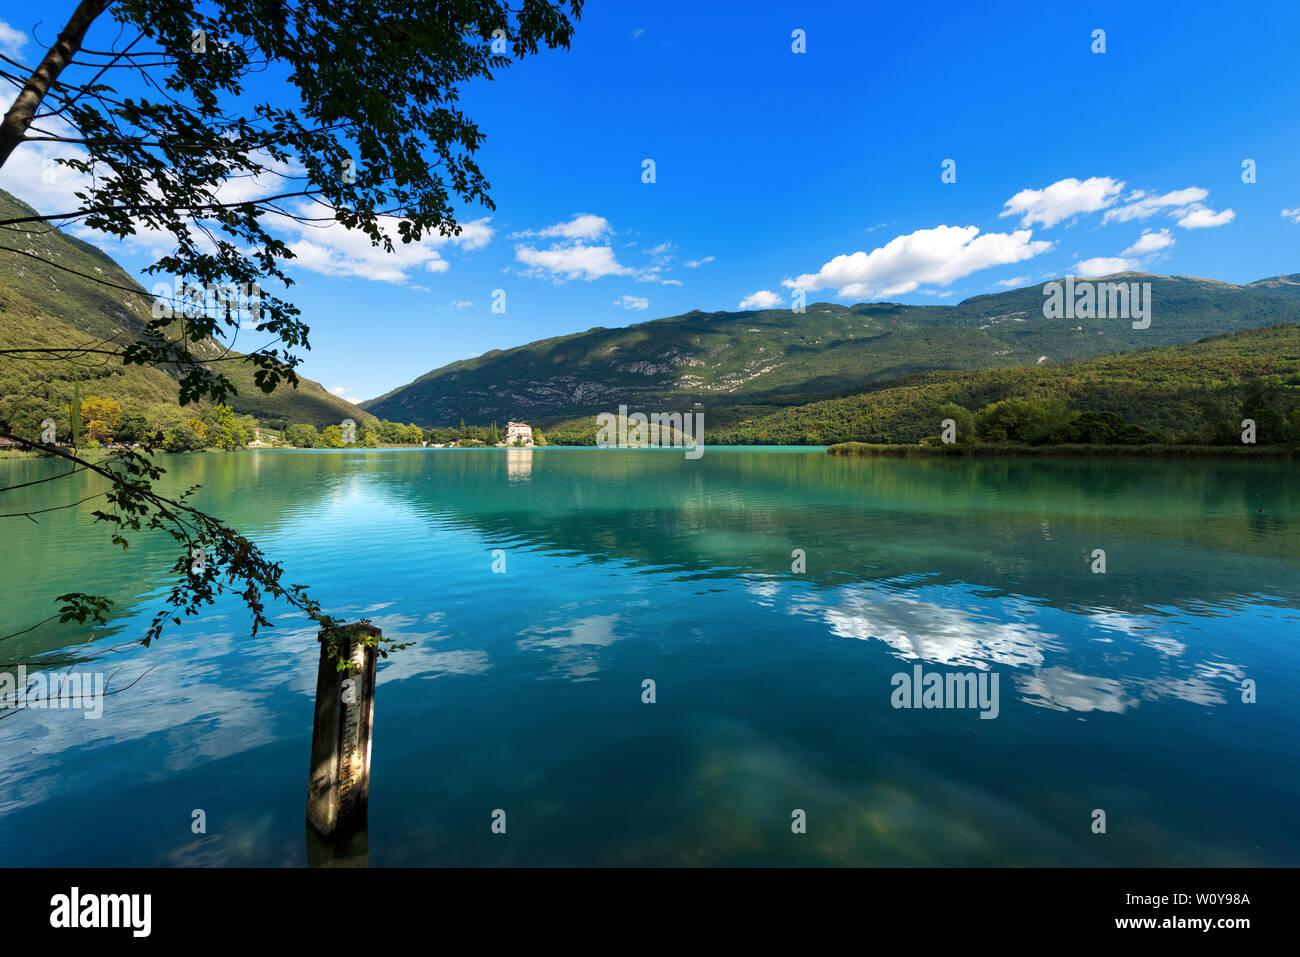 Toblino Lake (Lago di Toblino) with a medieval castle, small alpine lake in Trentino Alto Adige, Italy, Europe Stock Photo